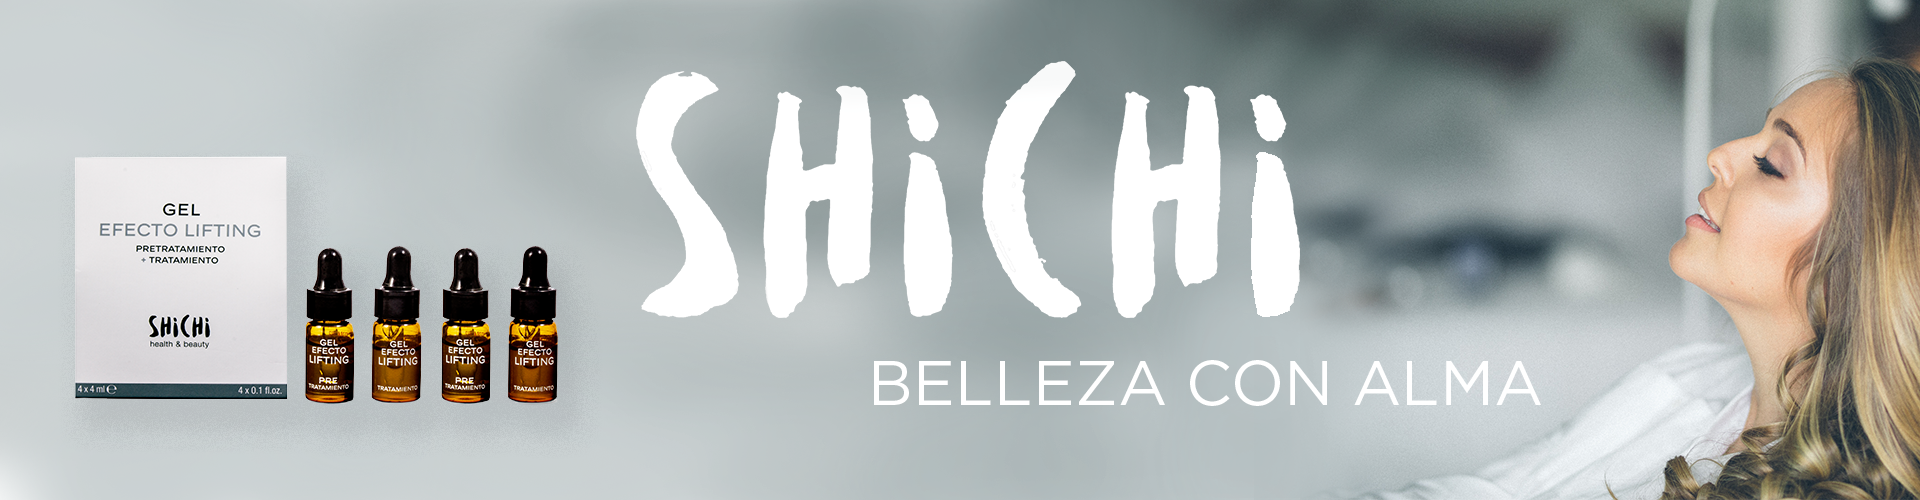 Shichi